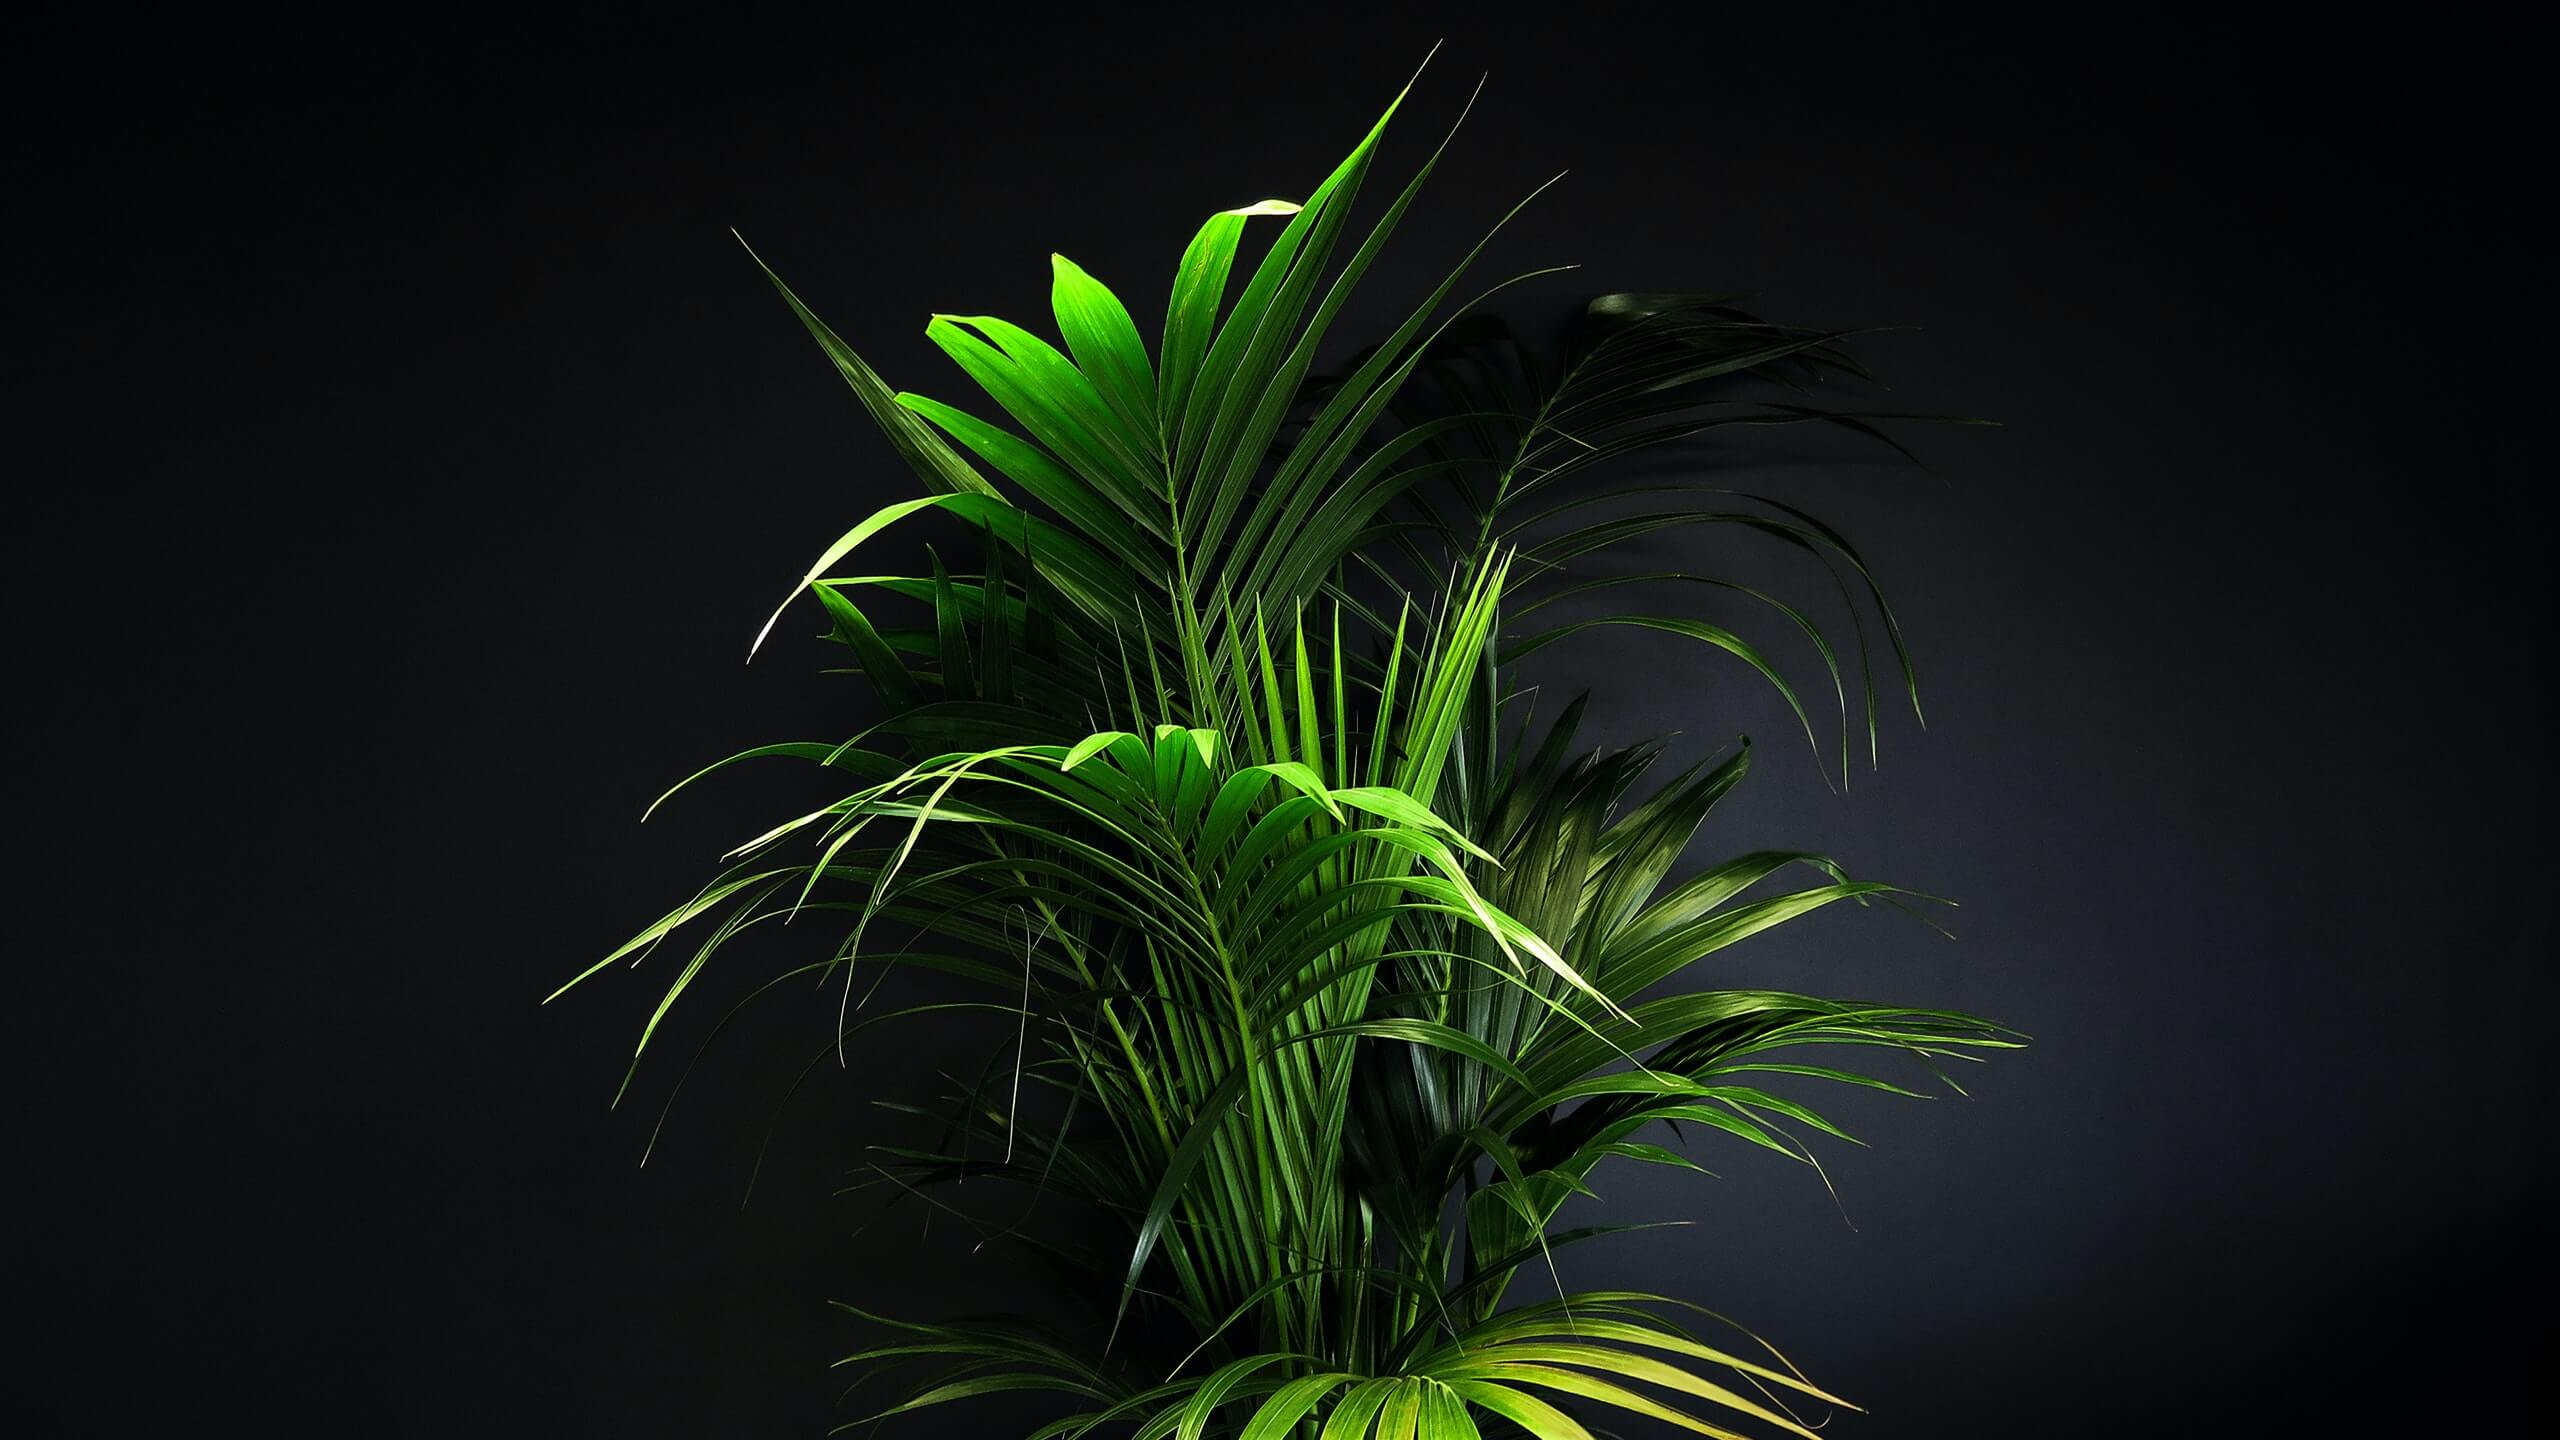 feuilles de palmier photographié avec un éclairage contrasté qui permet d'admirer les niveaux de luminance dans la couleur des feuilles